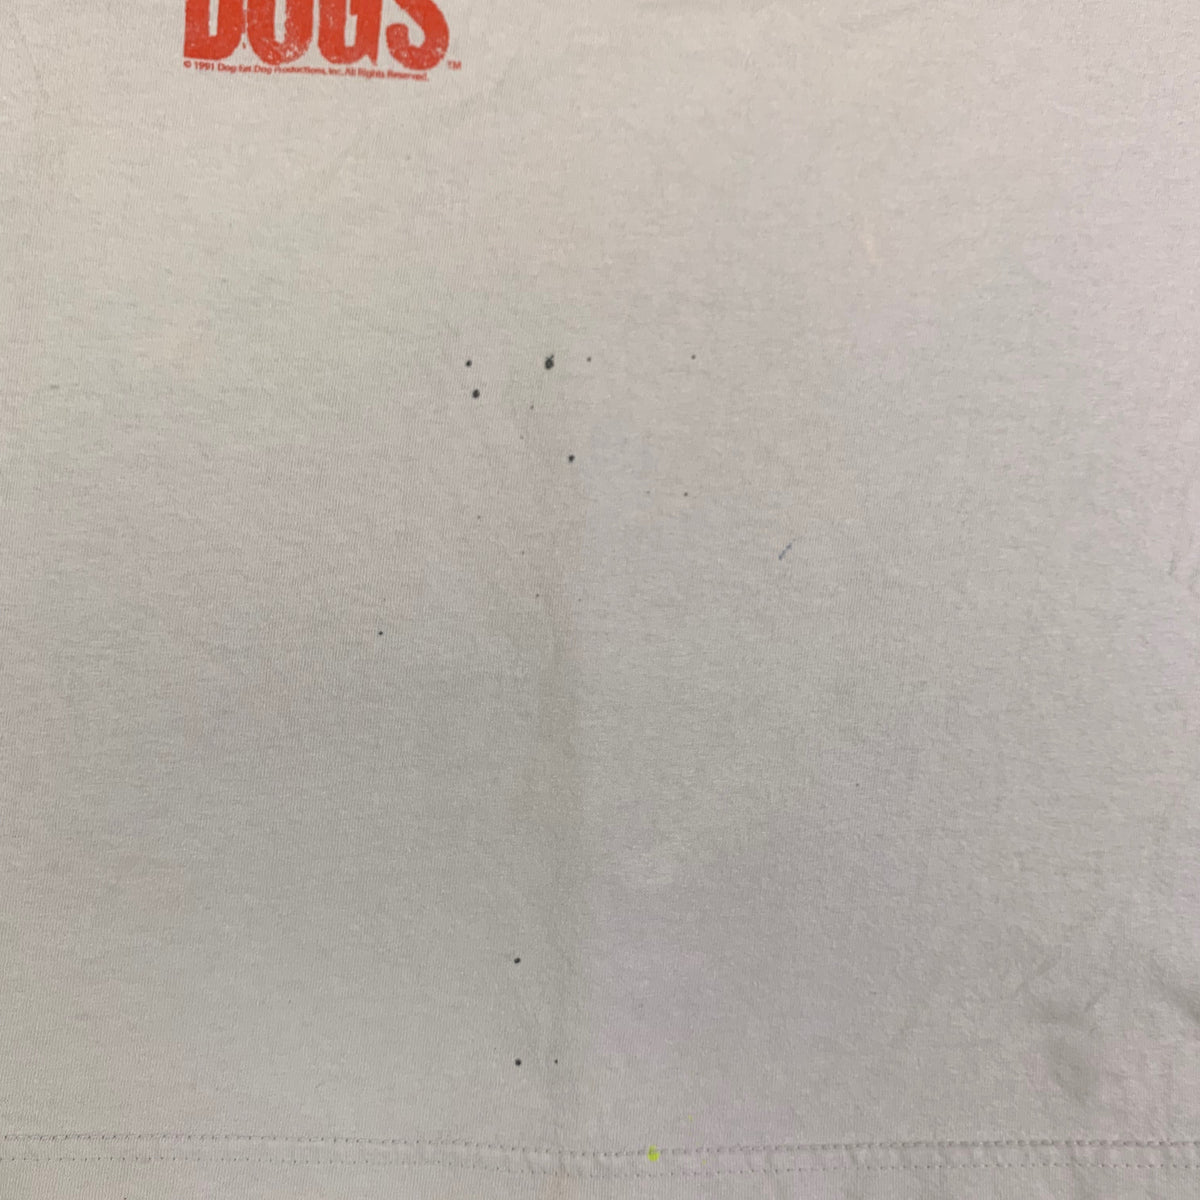 Vintage Reservoir Dogs &quot;1991&quot; T-Shirt - jointcustodydc